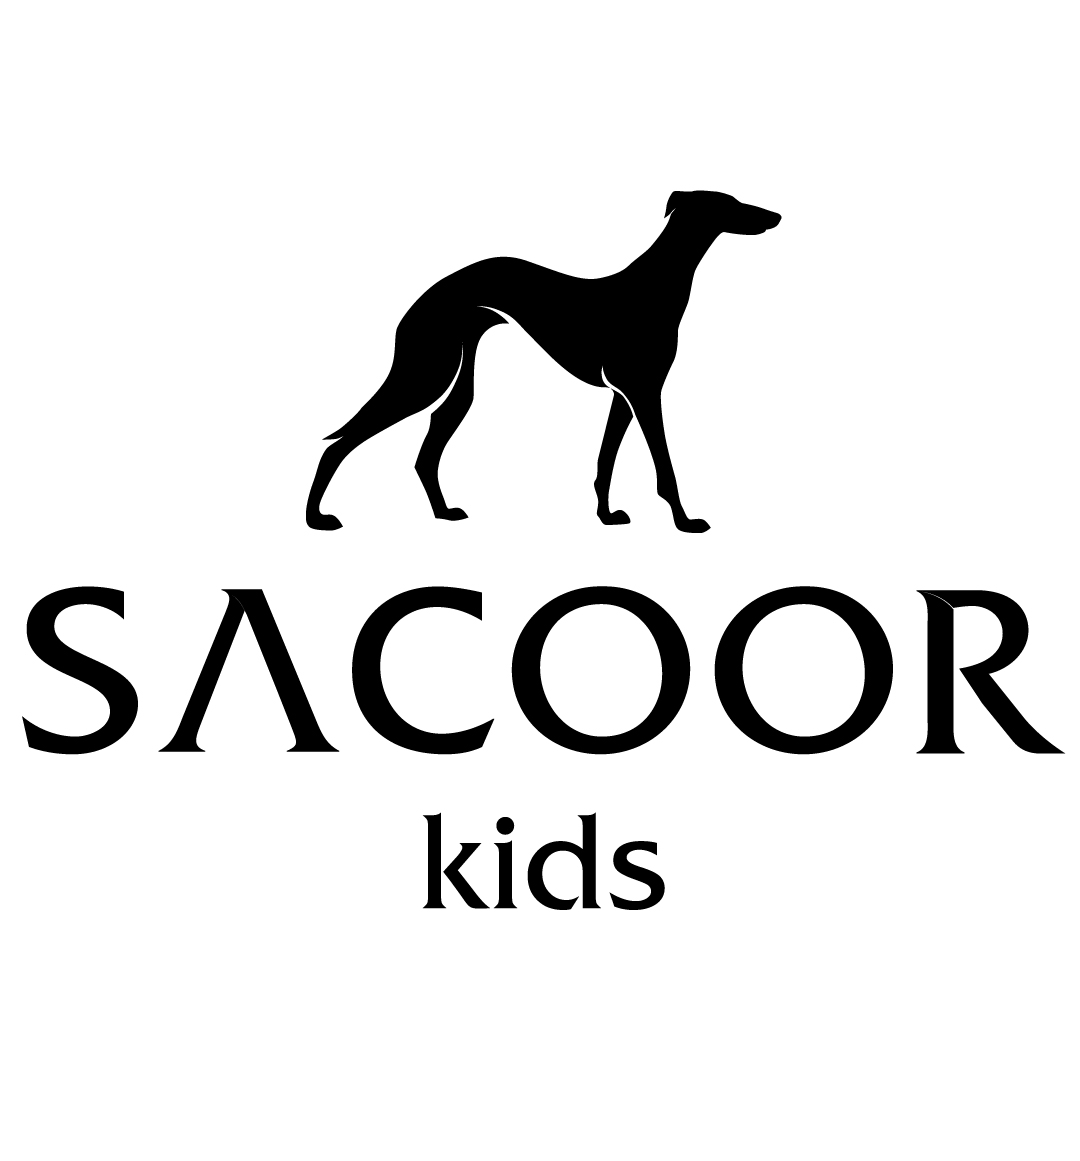 Sacoor Kids